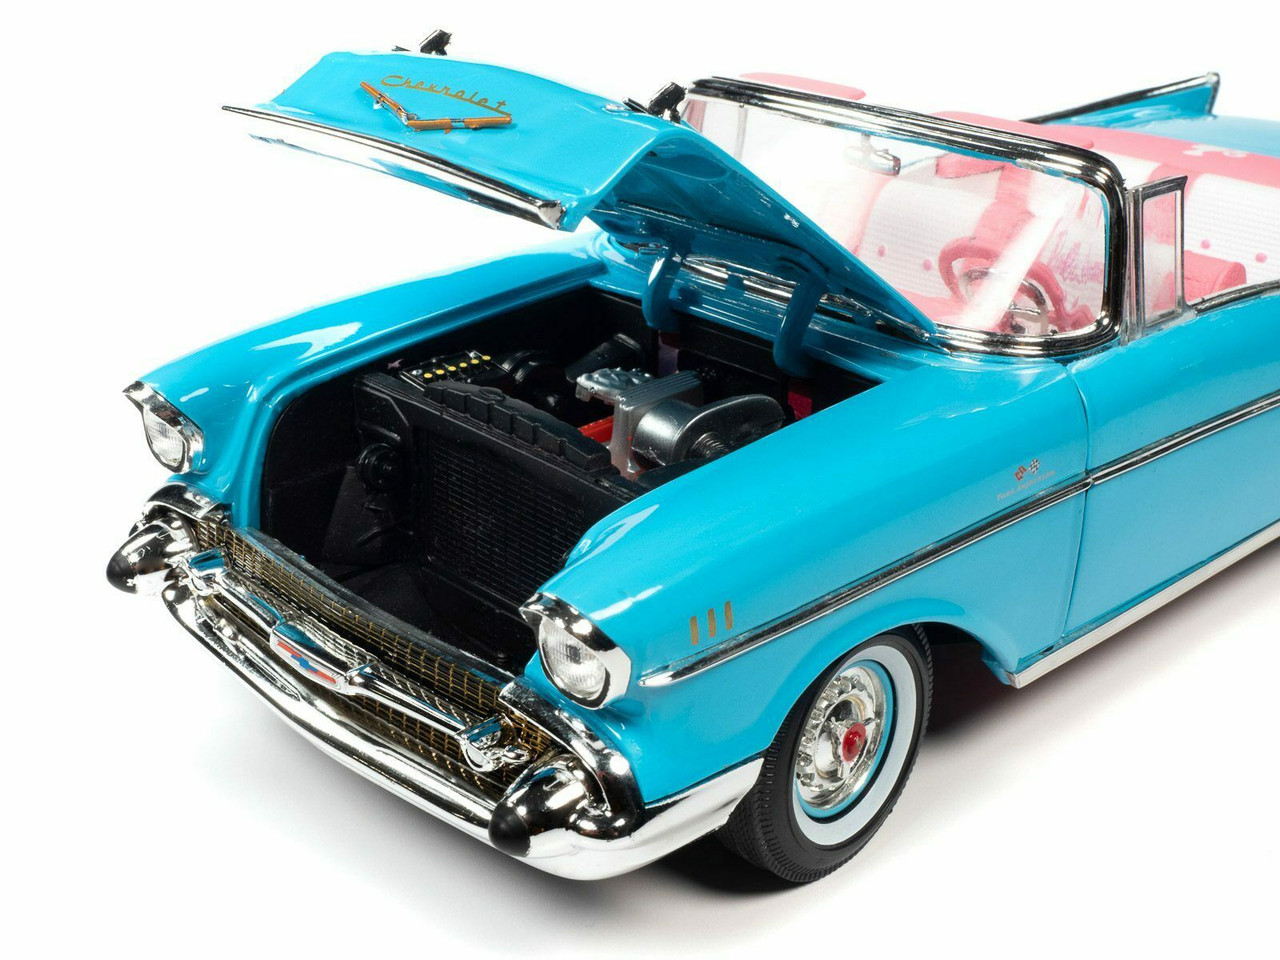 1/18 Auto World 1957 Barbie Chevrolet Chevy Bel Air (Aqua Blue) Diecast Car Model